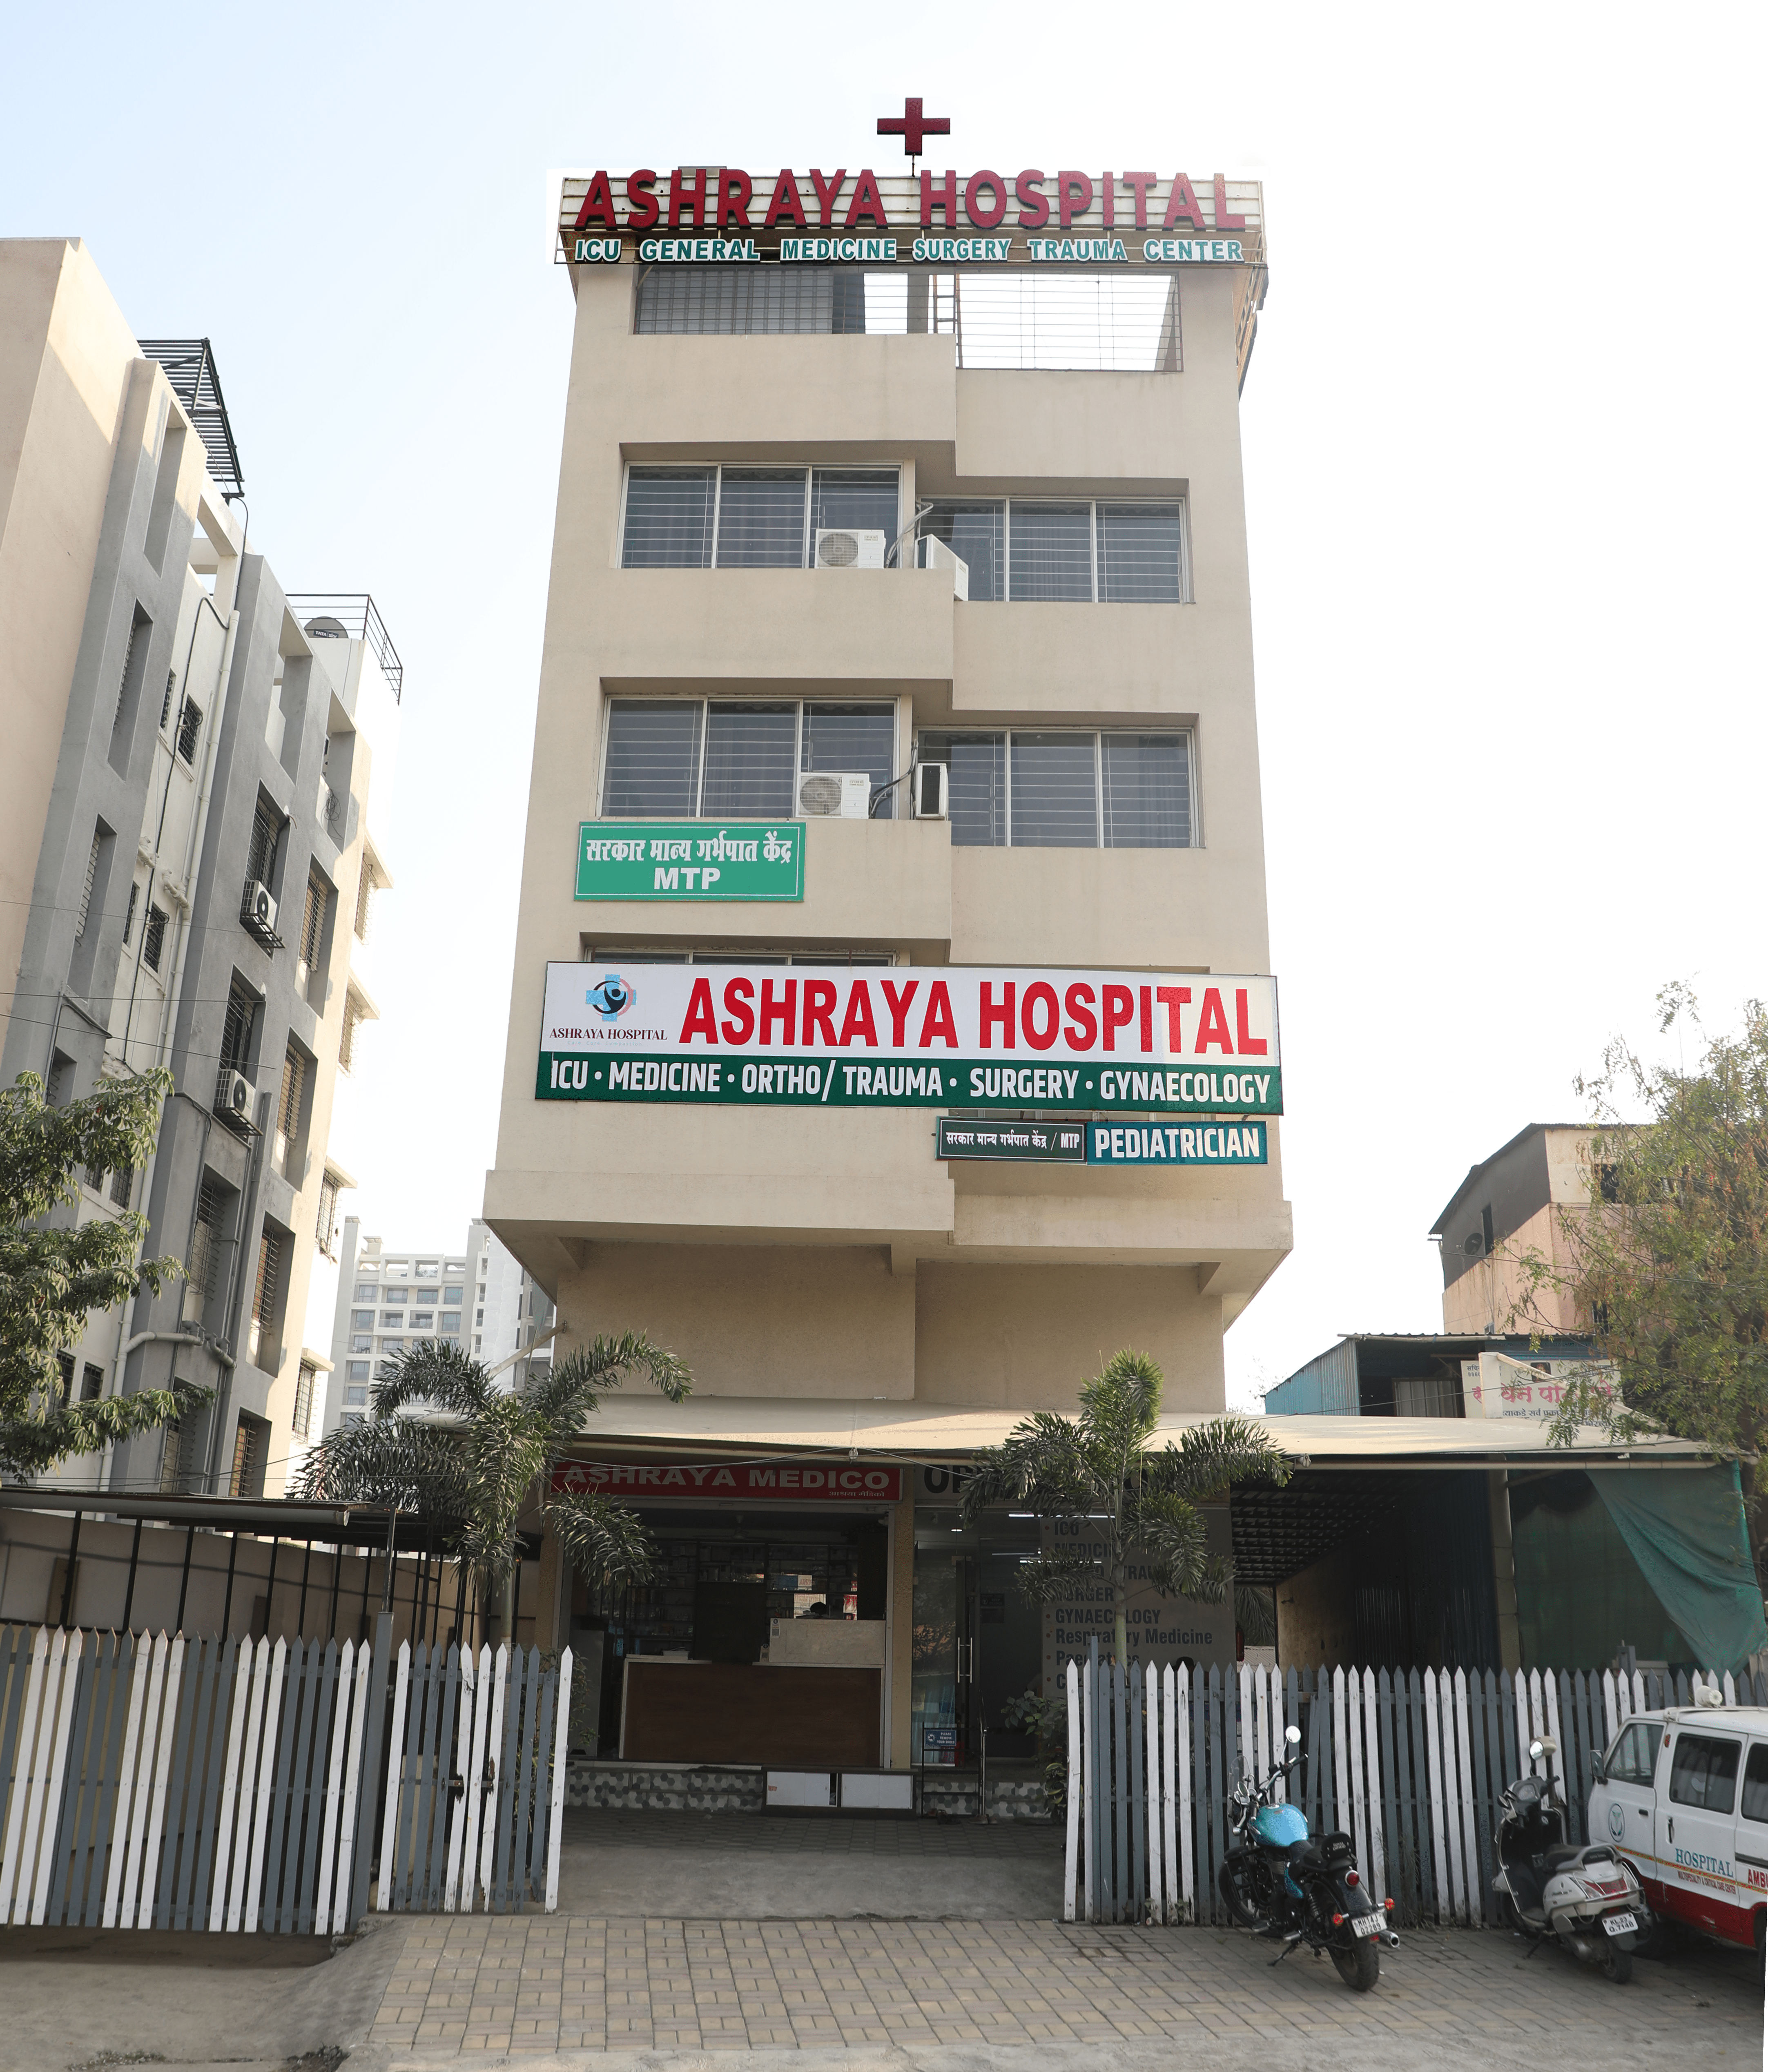 Front-facing view of Ashraya Hospital